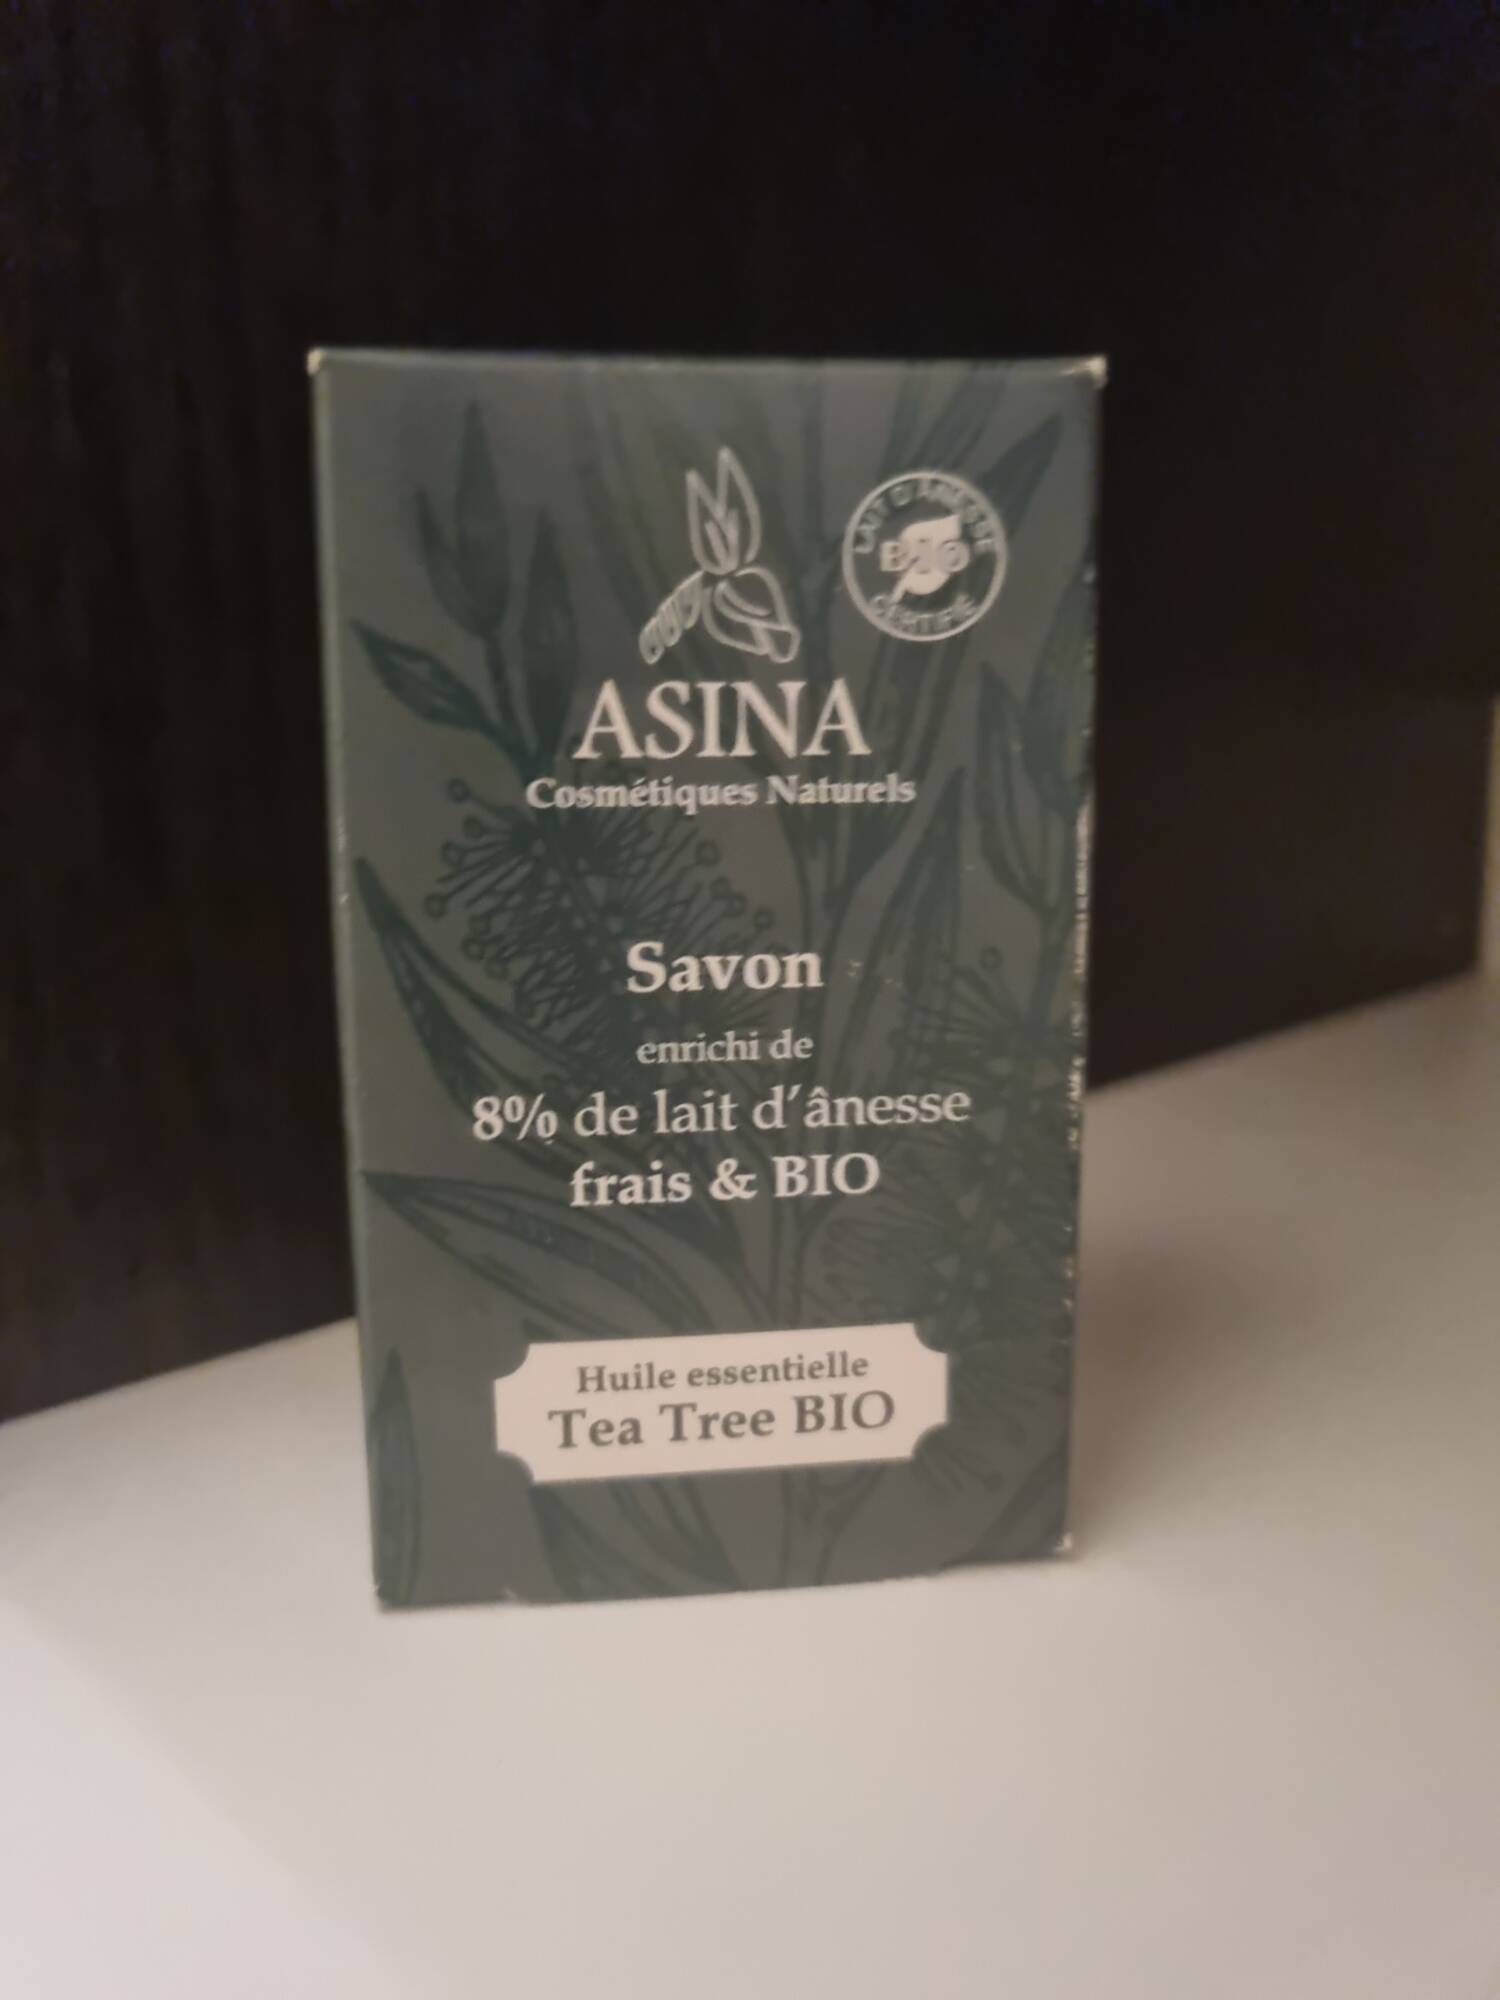 ASINA - Tea tree bio - Savon 8% de lait d'ânesse frais et bio